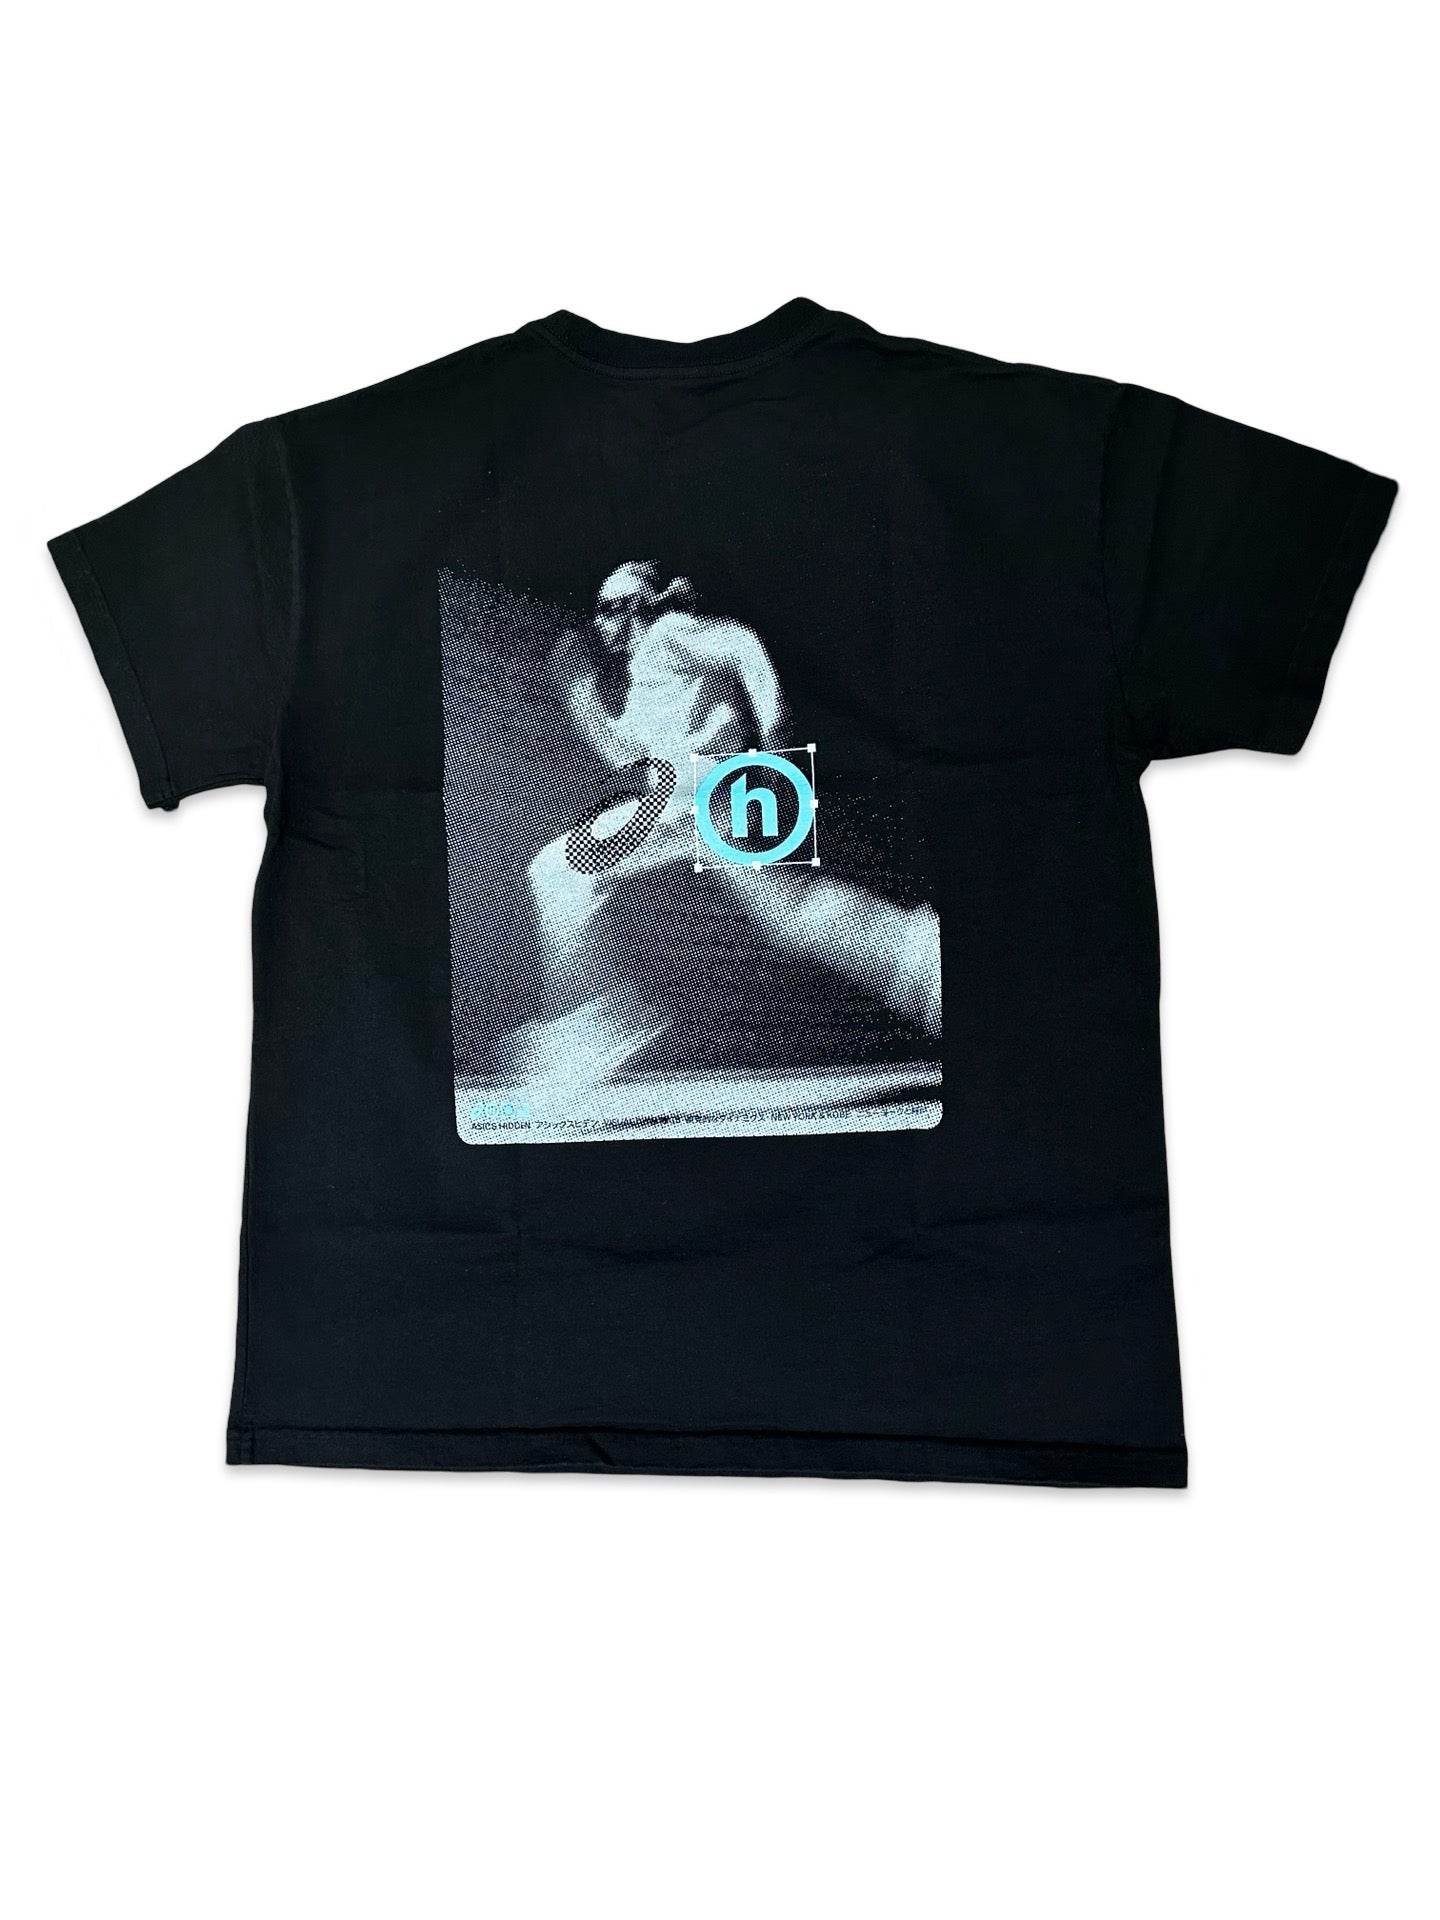 Hidden x Asics Running Man T-Shirt Black